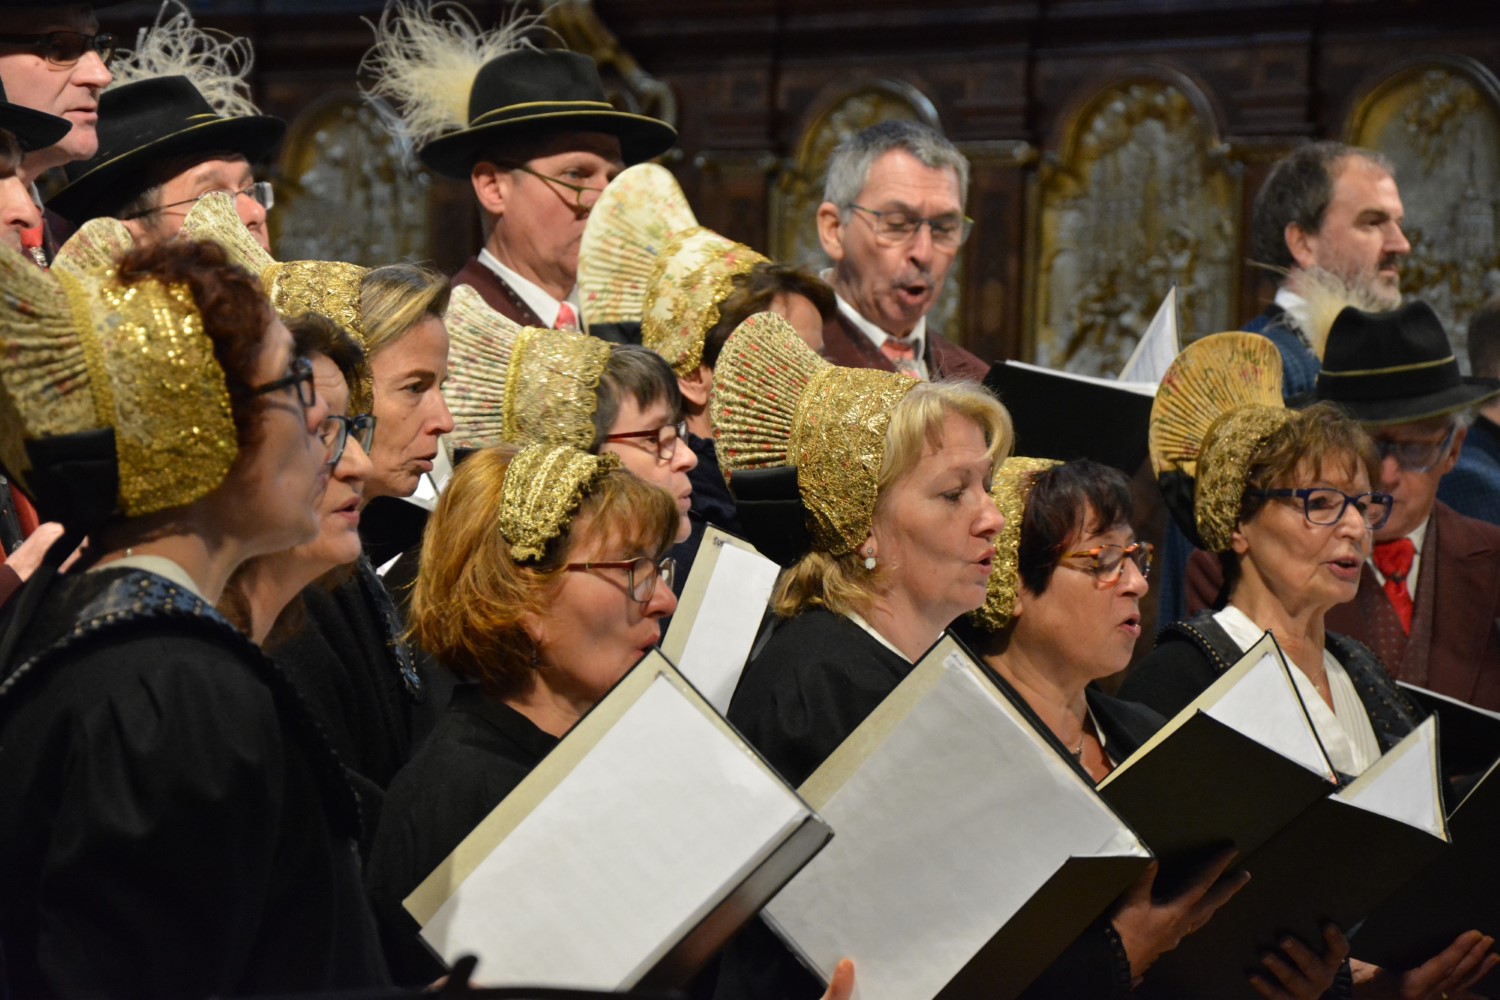 Chor in Wachauer Tracht